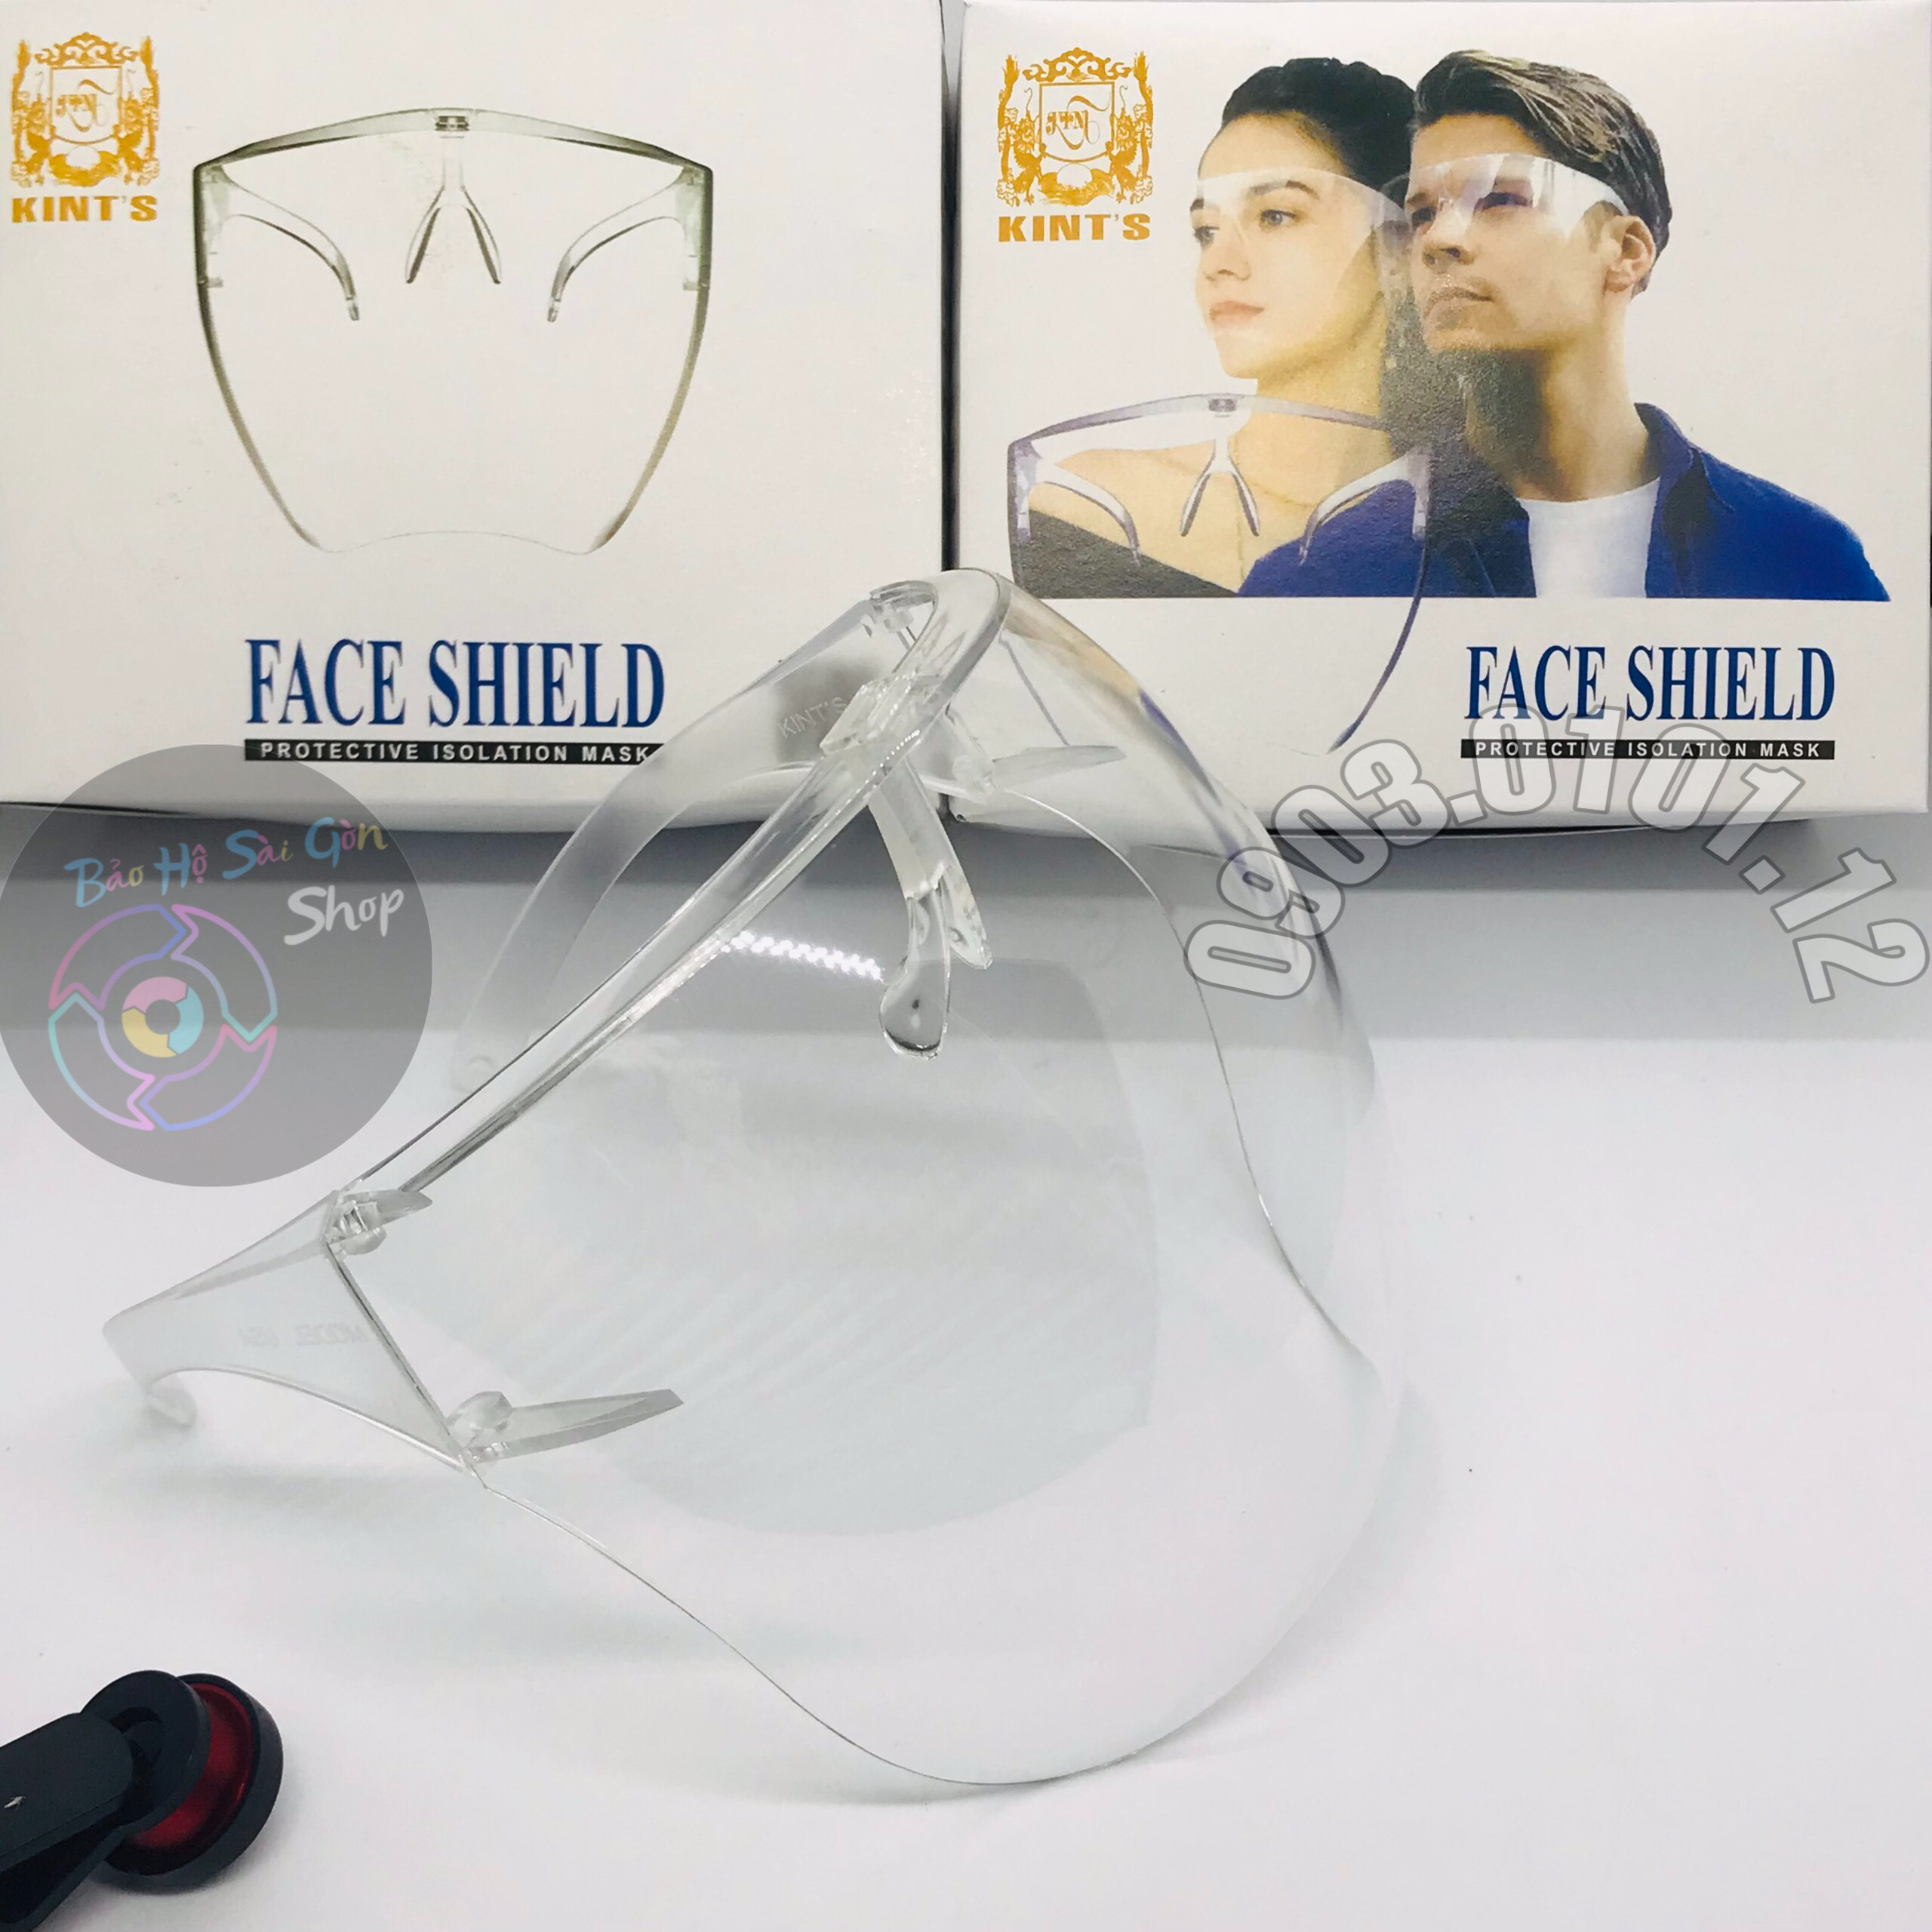 Kính bảo hộ chống giọt bắn thương hiệu Kint's chính hãng, tấm chắn face shield chống dịch đạt chuẩn bộ y tế